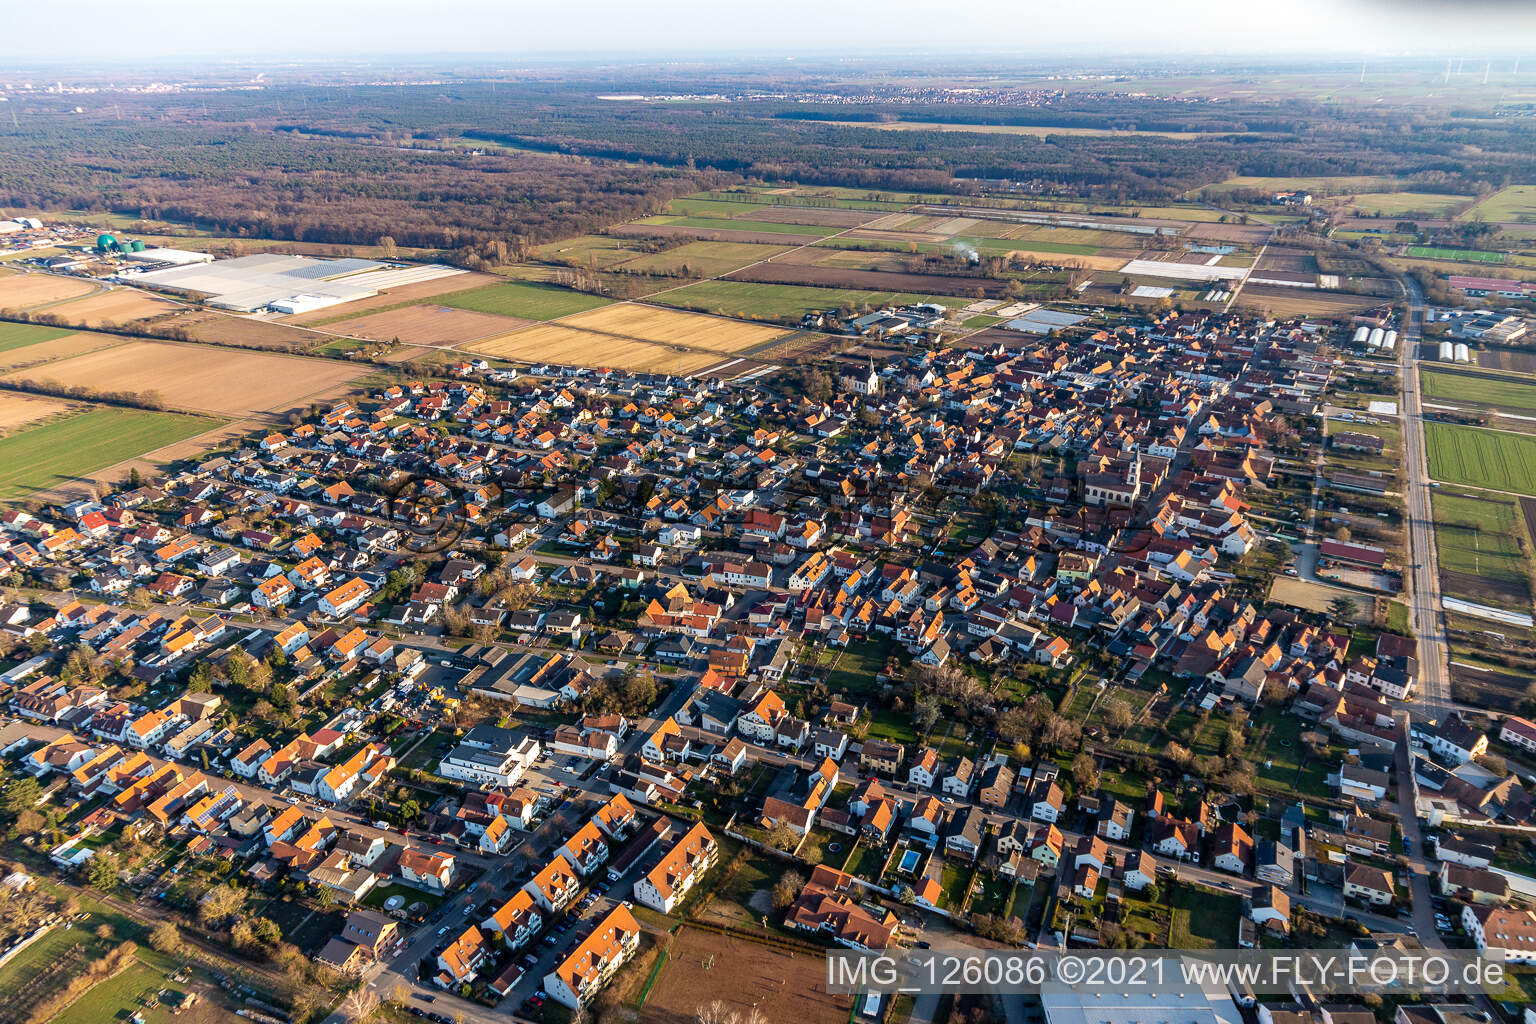 Vue aérienne de Vue sur la commune en bordure de champs agricoles et de zones agricoles à Zeiskam dans le département Rhénanie-Palatinat, Allemagne